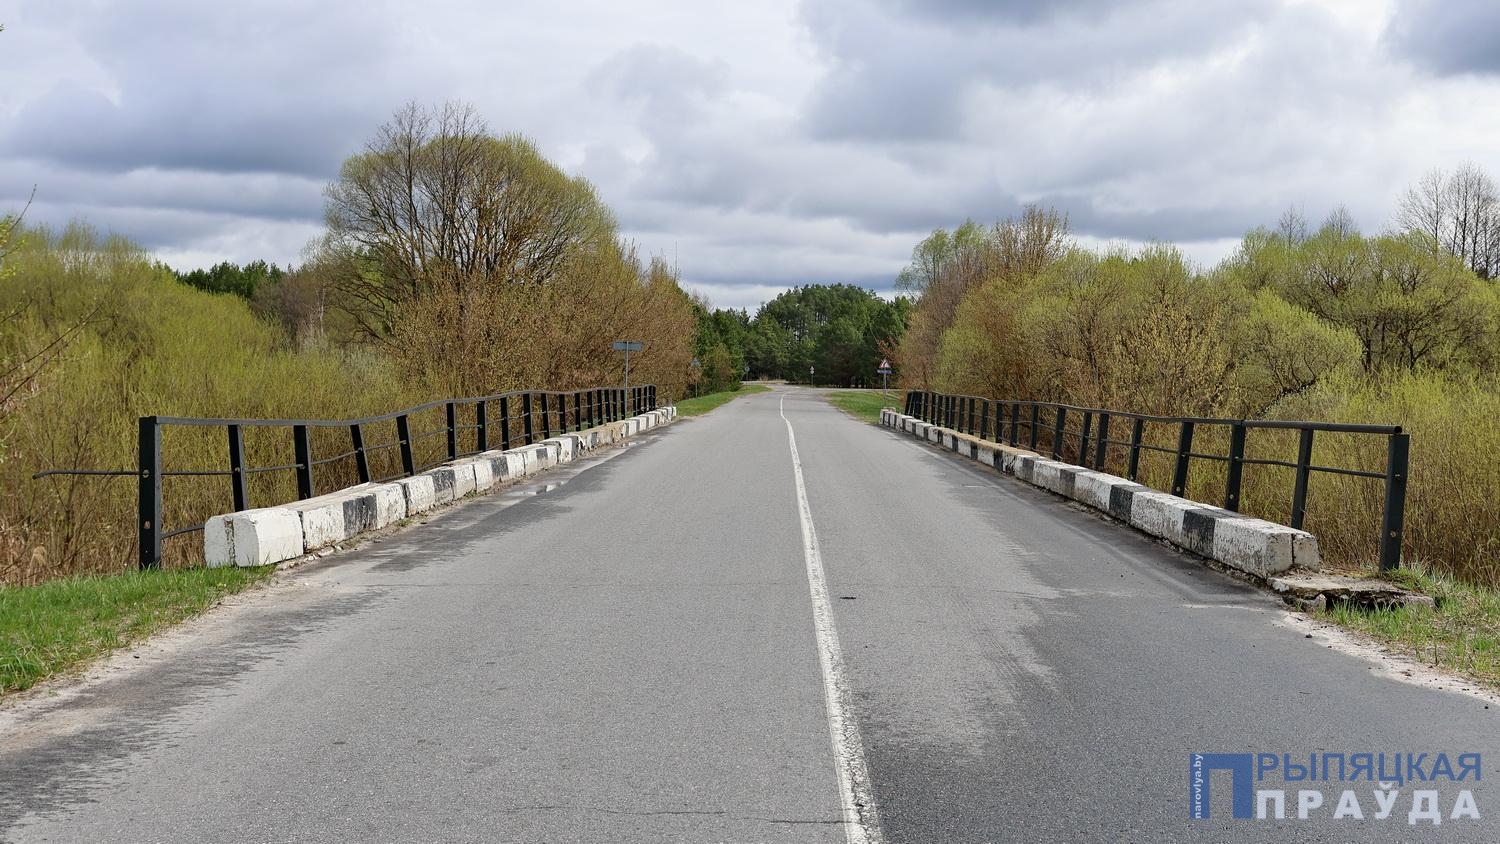 В Наровлянском районе в текущем году запланирован ремонт местной дорожной сети и мостов